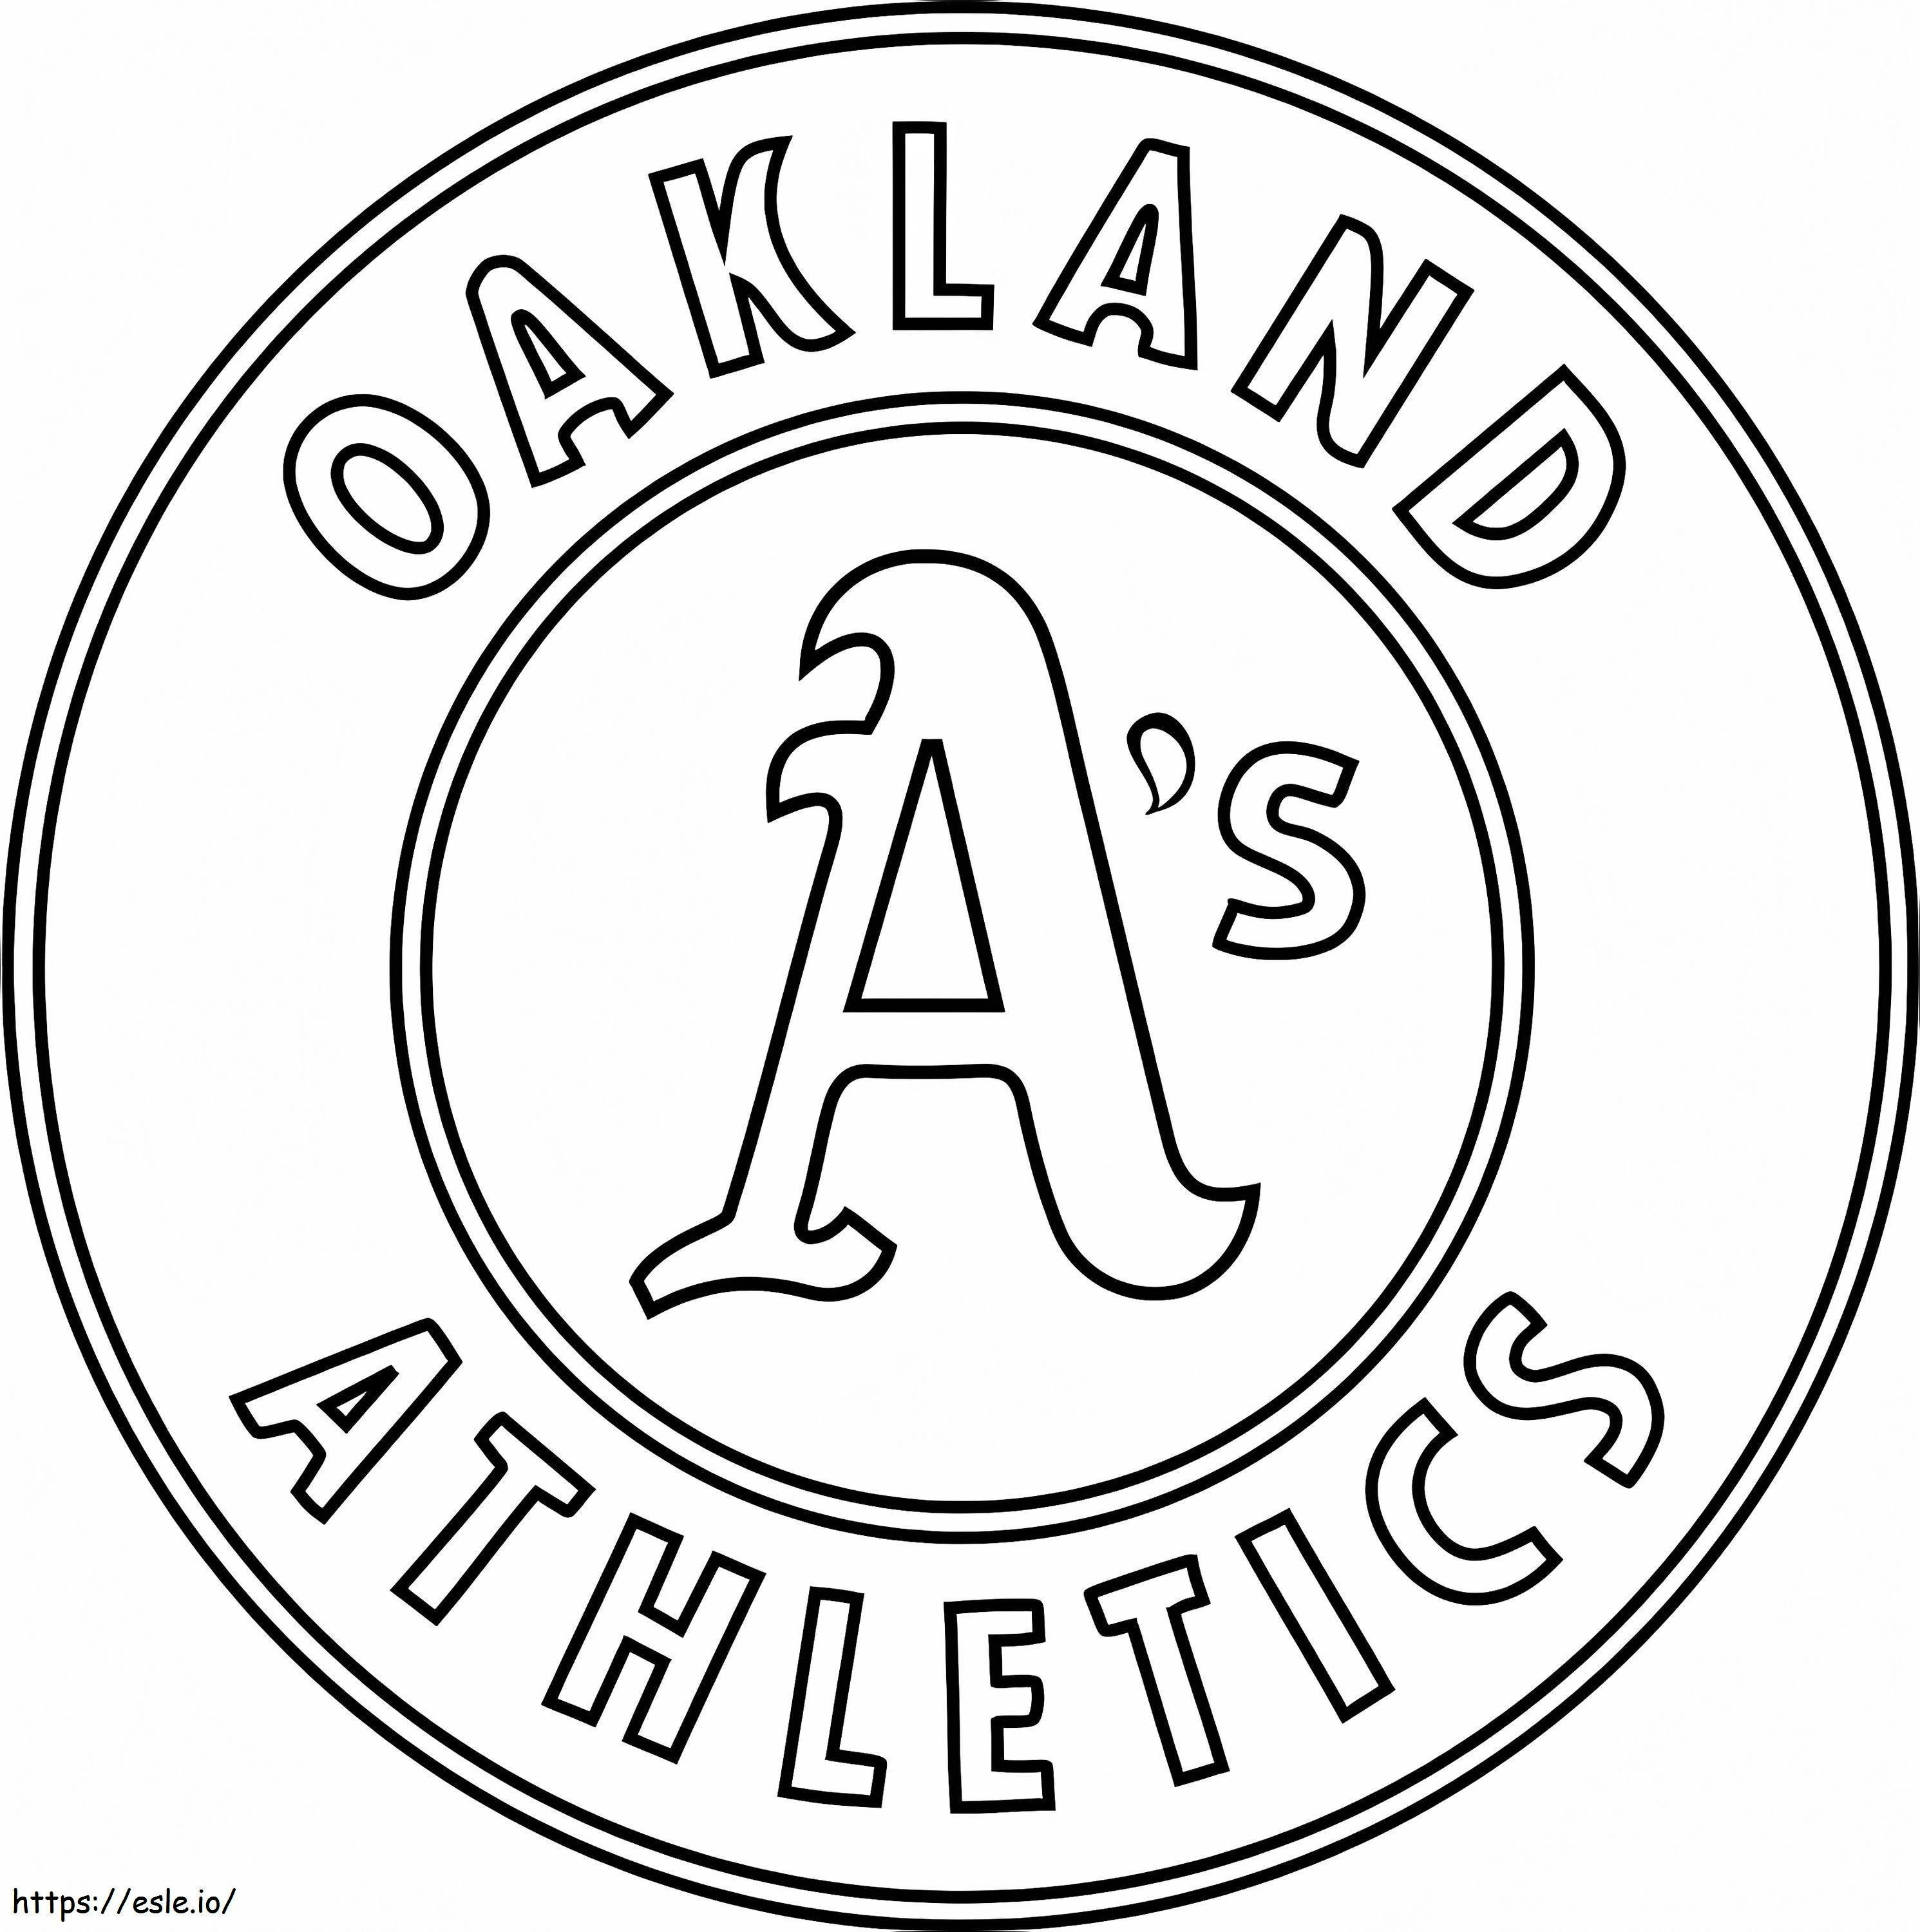 Oakland Atletizm Logosu boyama